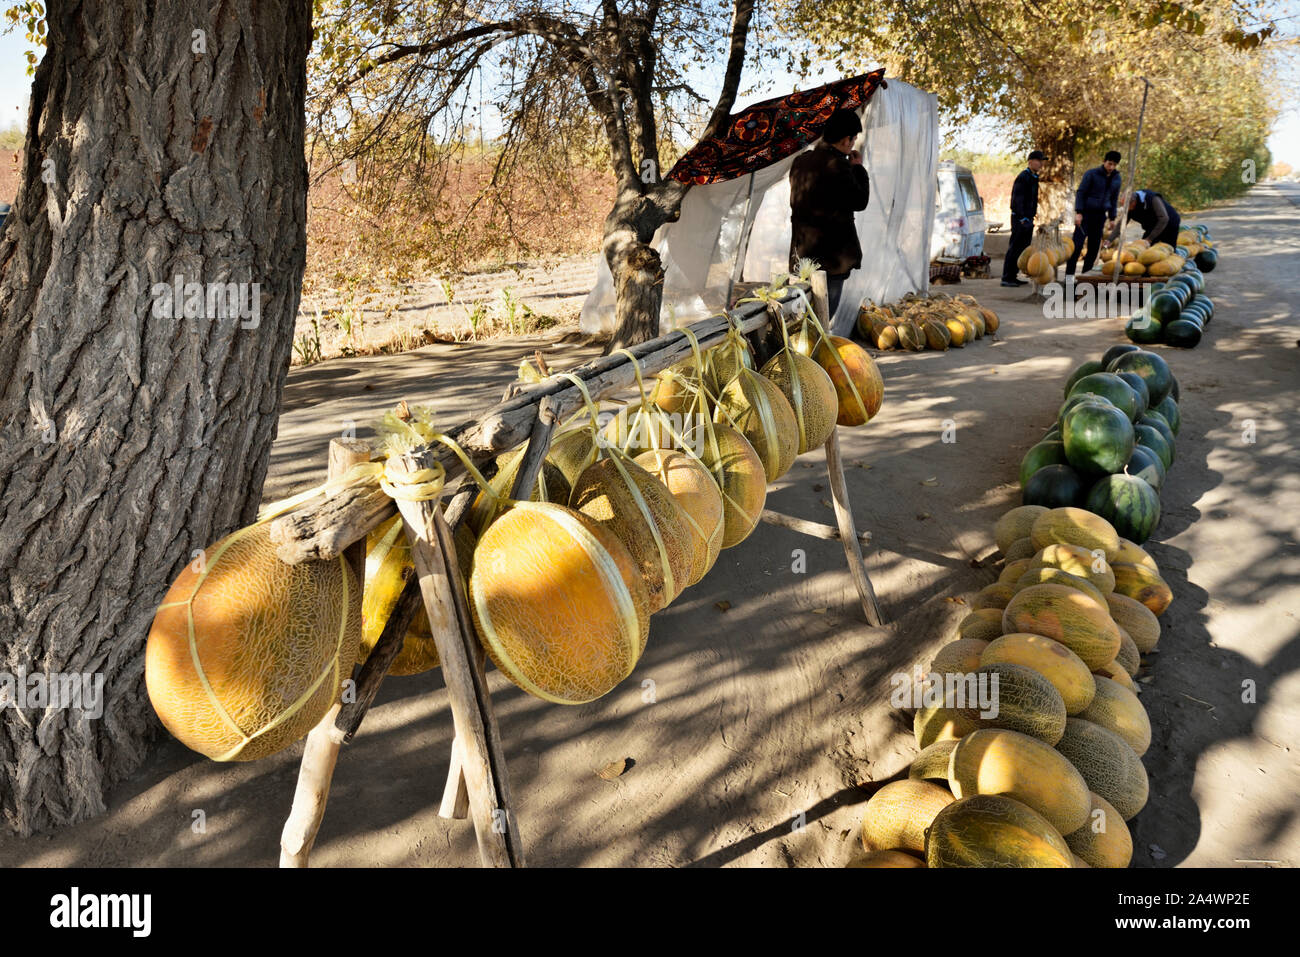 Melonen Anbieter. Kyzylkum Wüste in der Nähe von Fluss Amudarja. Die köstlichen usbekischen Melonen waren bereits durch die mittelalterliche Reisende Ibn Battuta gelobt. Uzbekist Stockfoto